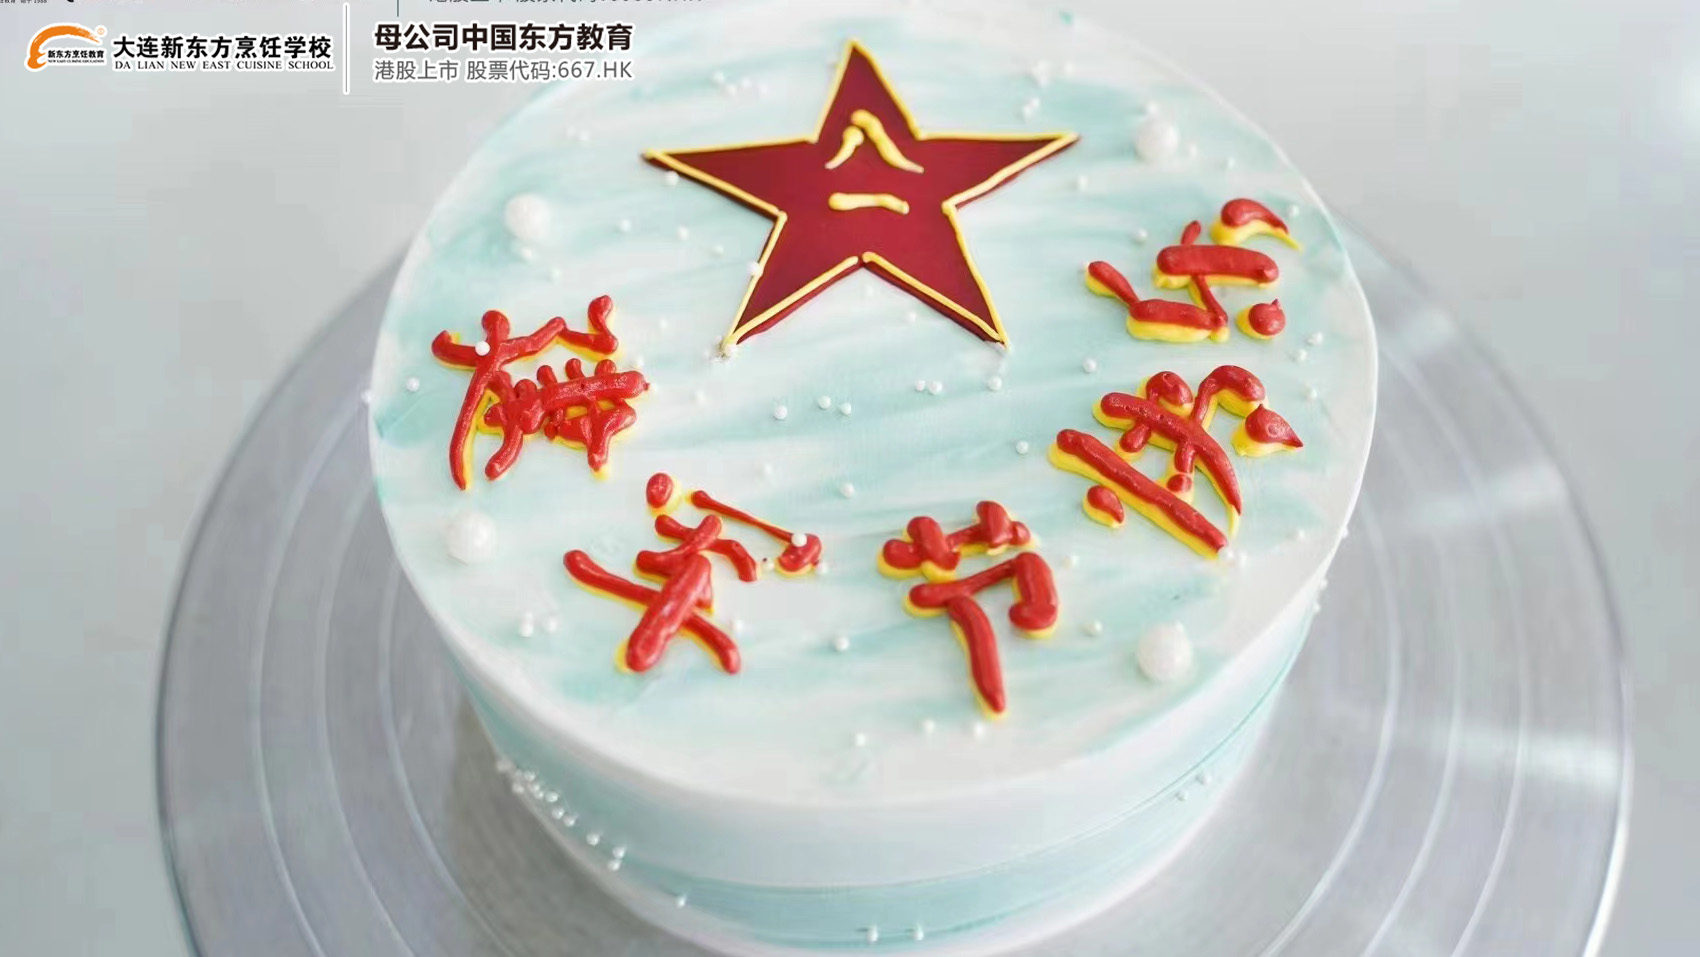 庆祝中国人民解放军建军95周年